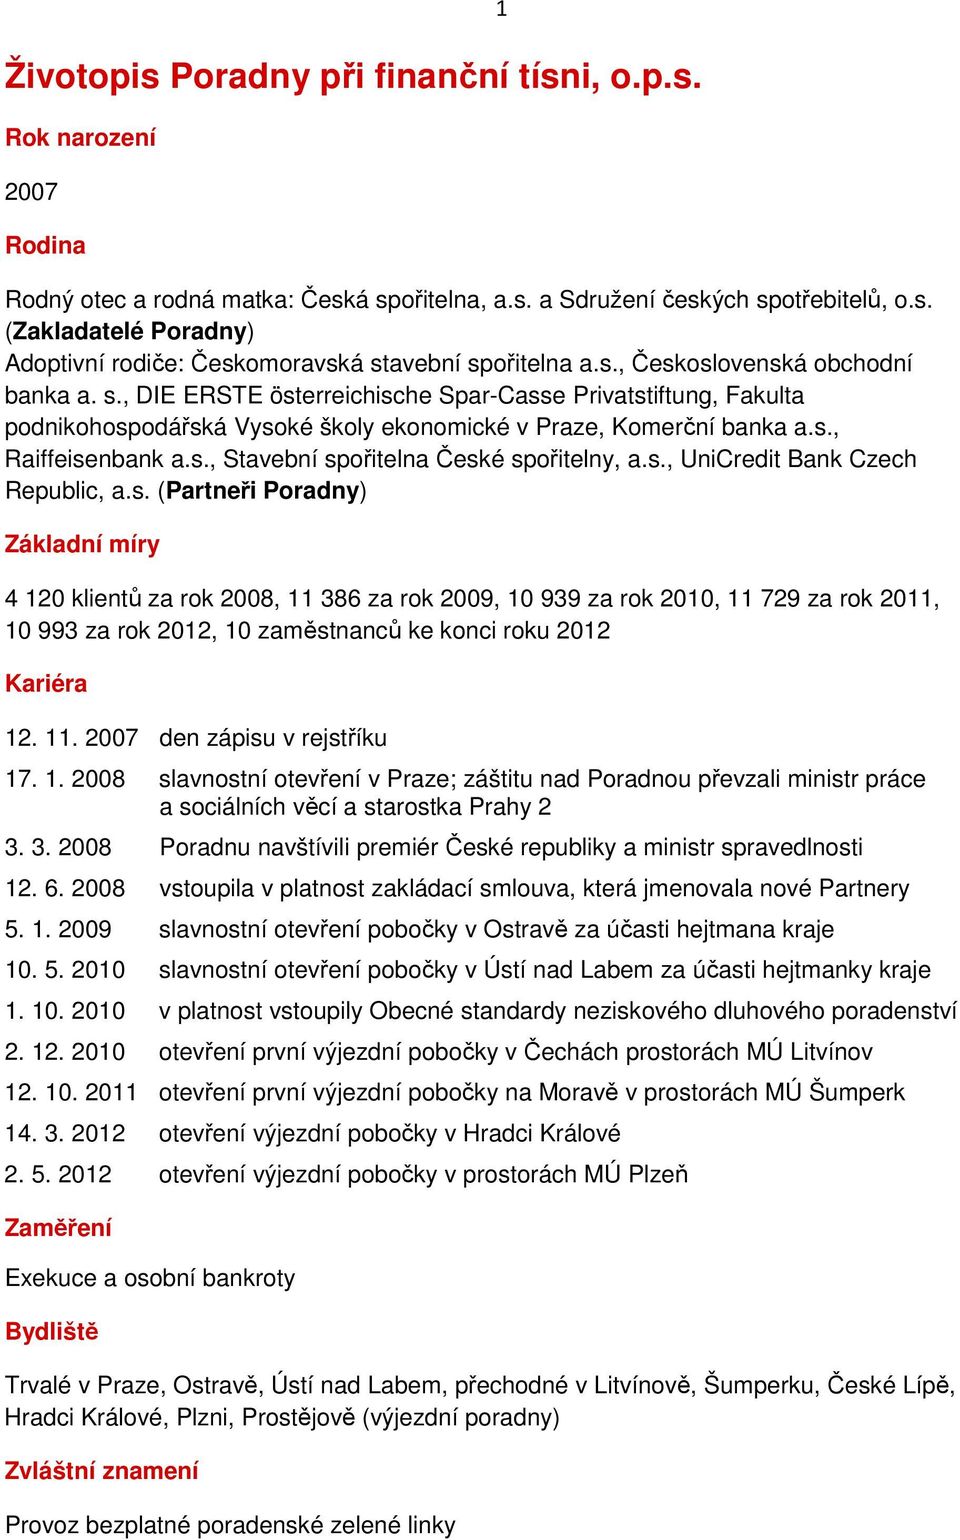 s., UniCredit Bank Czech Republic, a.s. (Partneři Poradny) Základní míry 4 120 klientů za rok 2008, 11 386 za rok 2009, 10 939 za rok 2010, 11 729 za rok 2011, 10 993 za rok 2012, 10 zaměstnanců ke konci roku 2012 Kariéra 12.